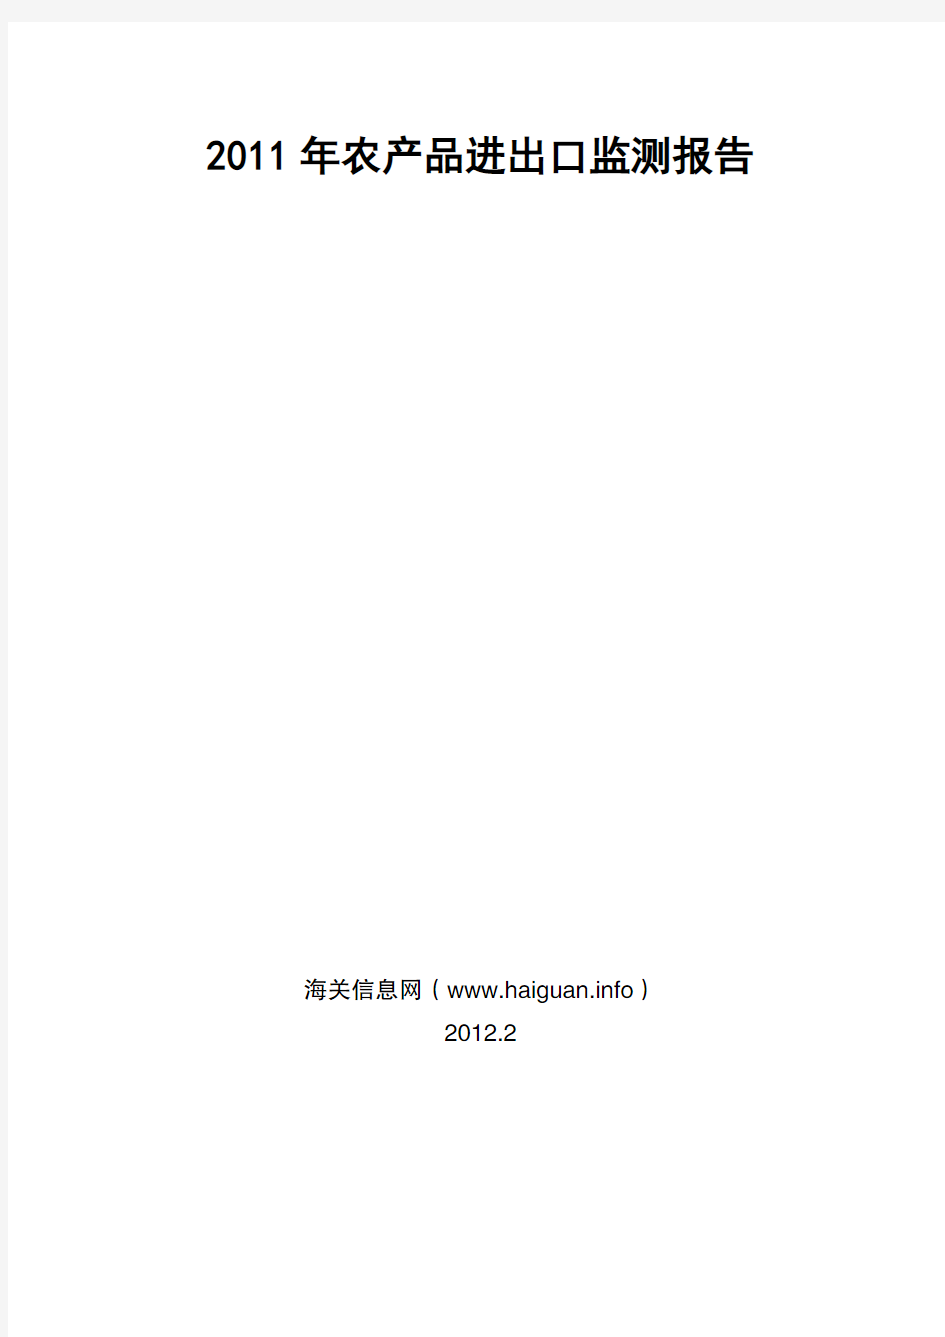 2011年农产品进出口监测报告.pdf